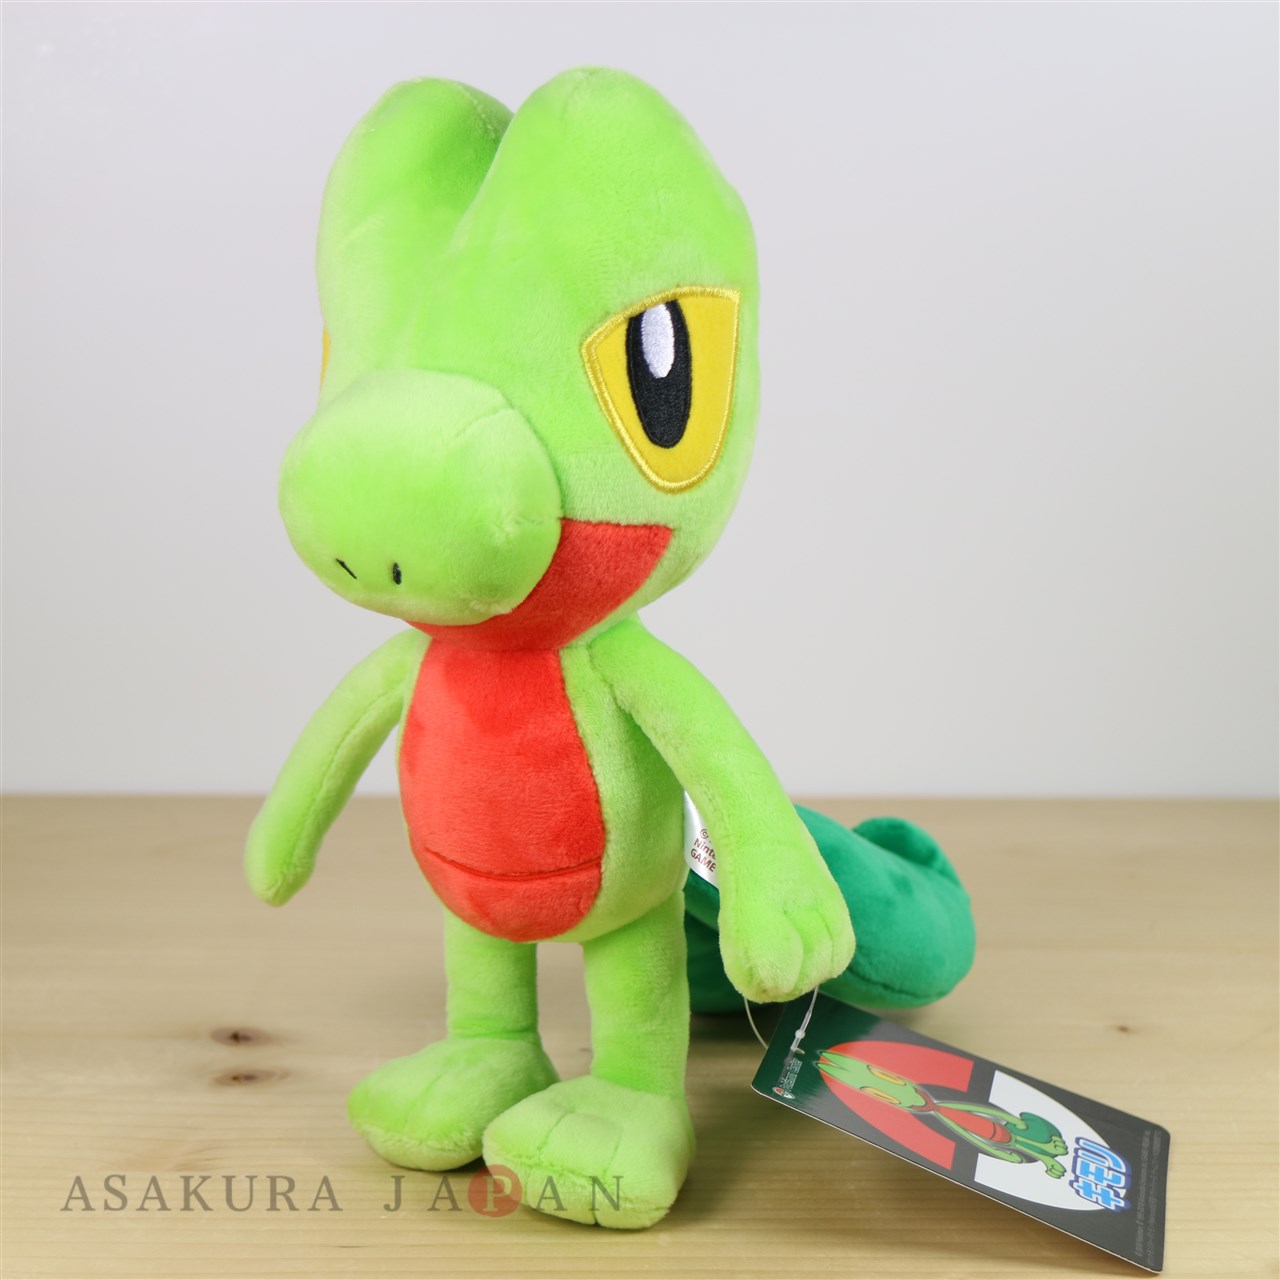 pokemon cuddly toy